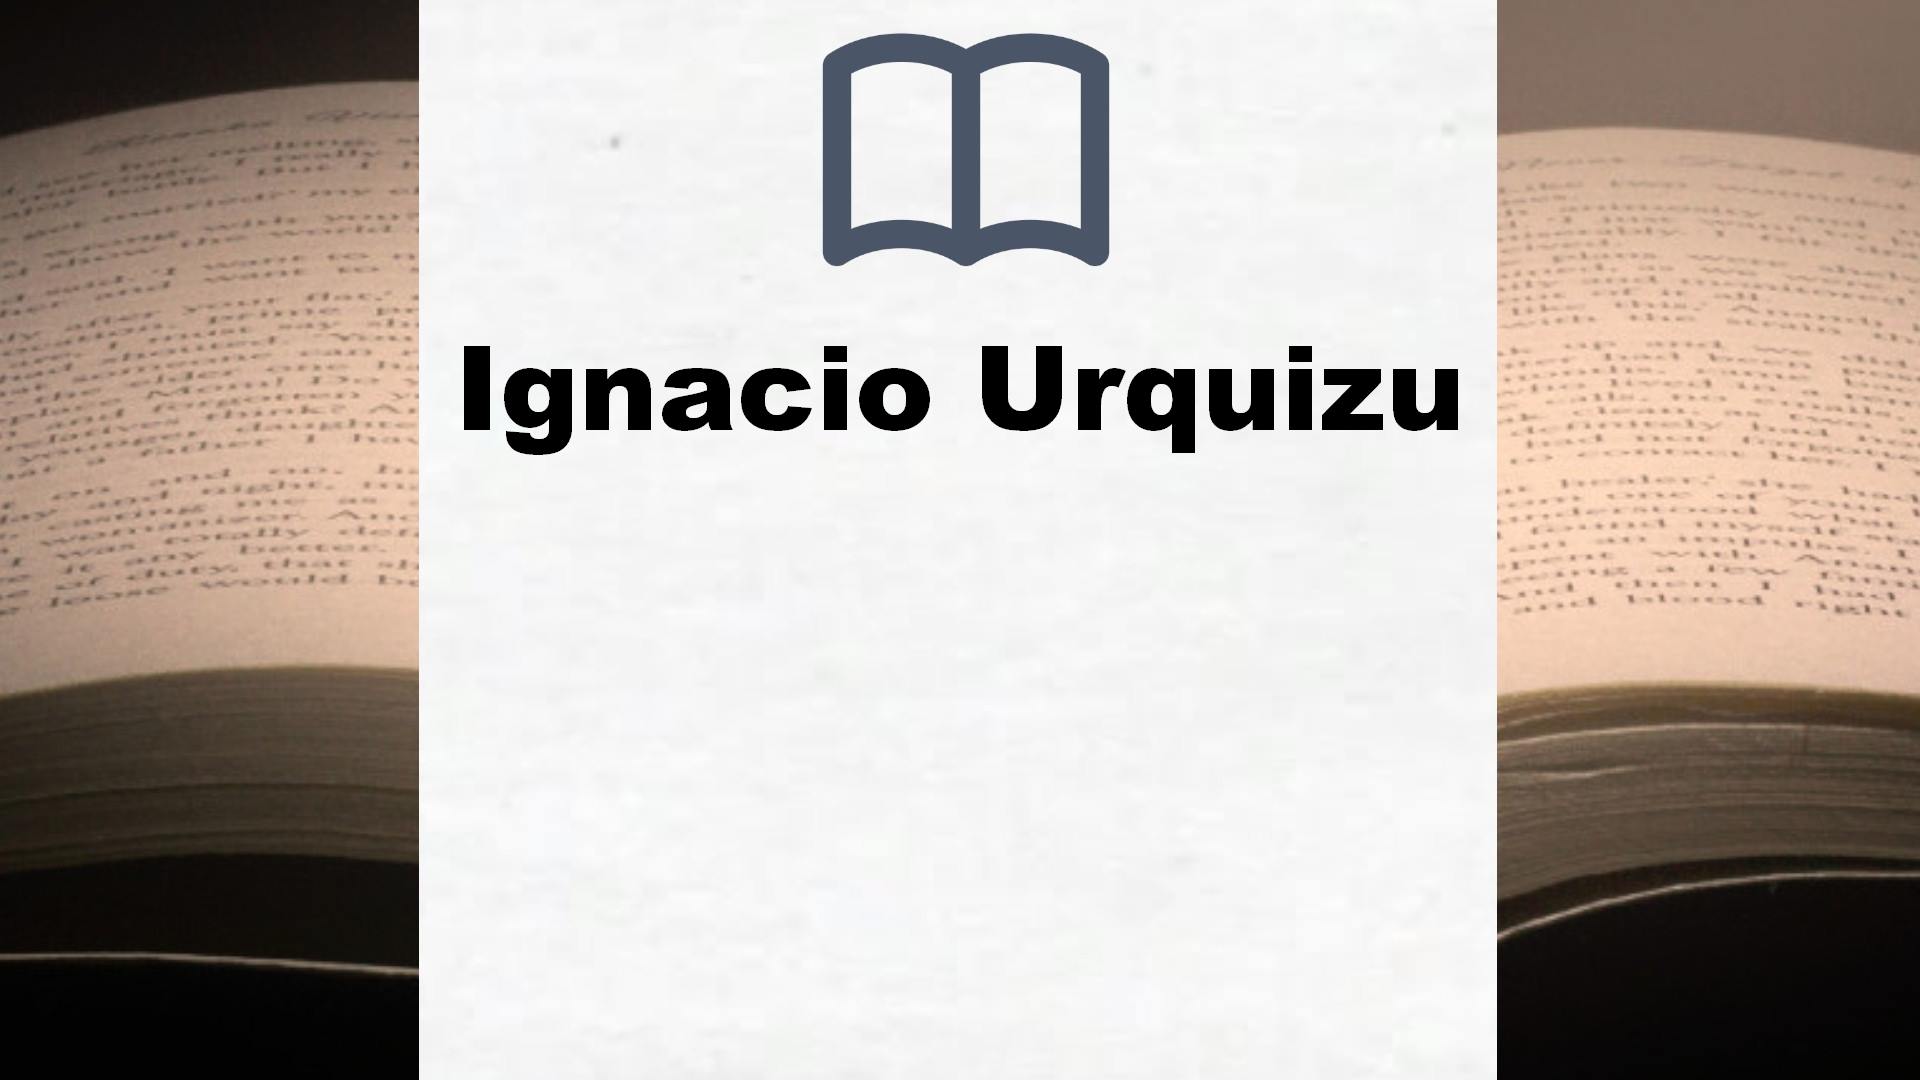 Libros Ignacio Urquizu